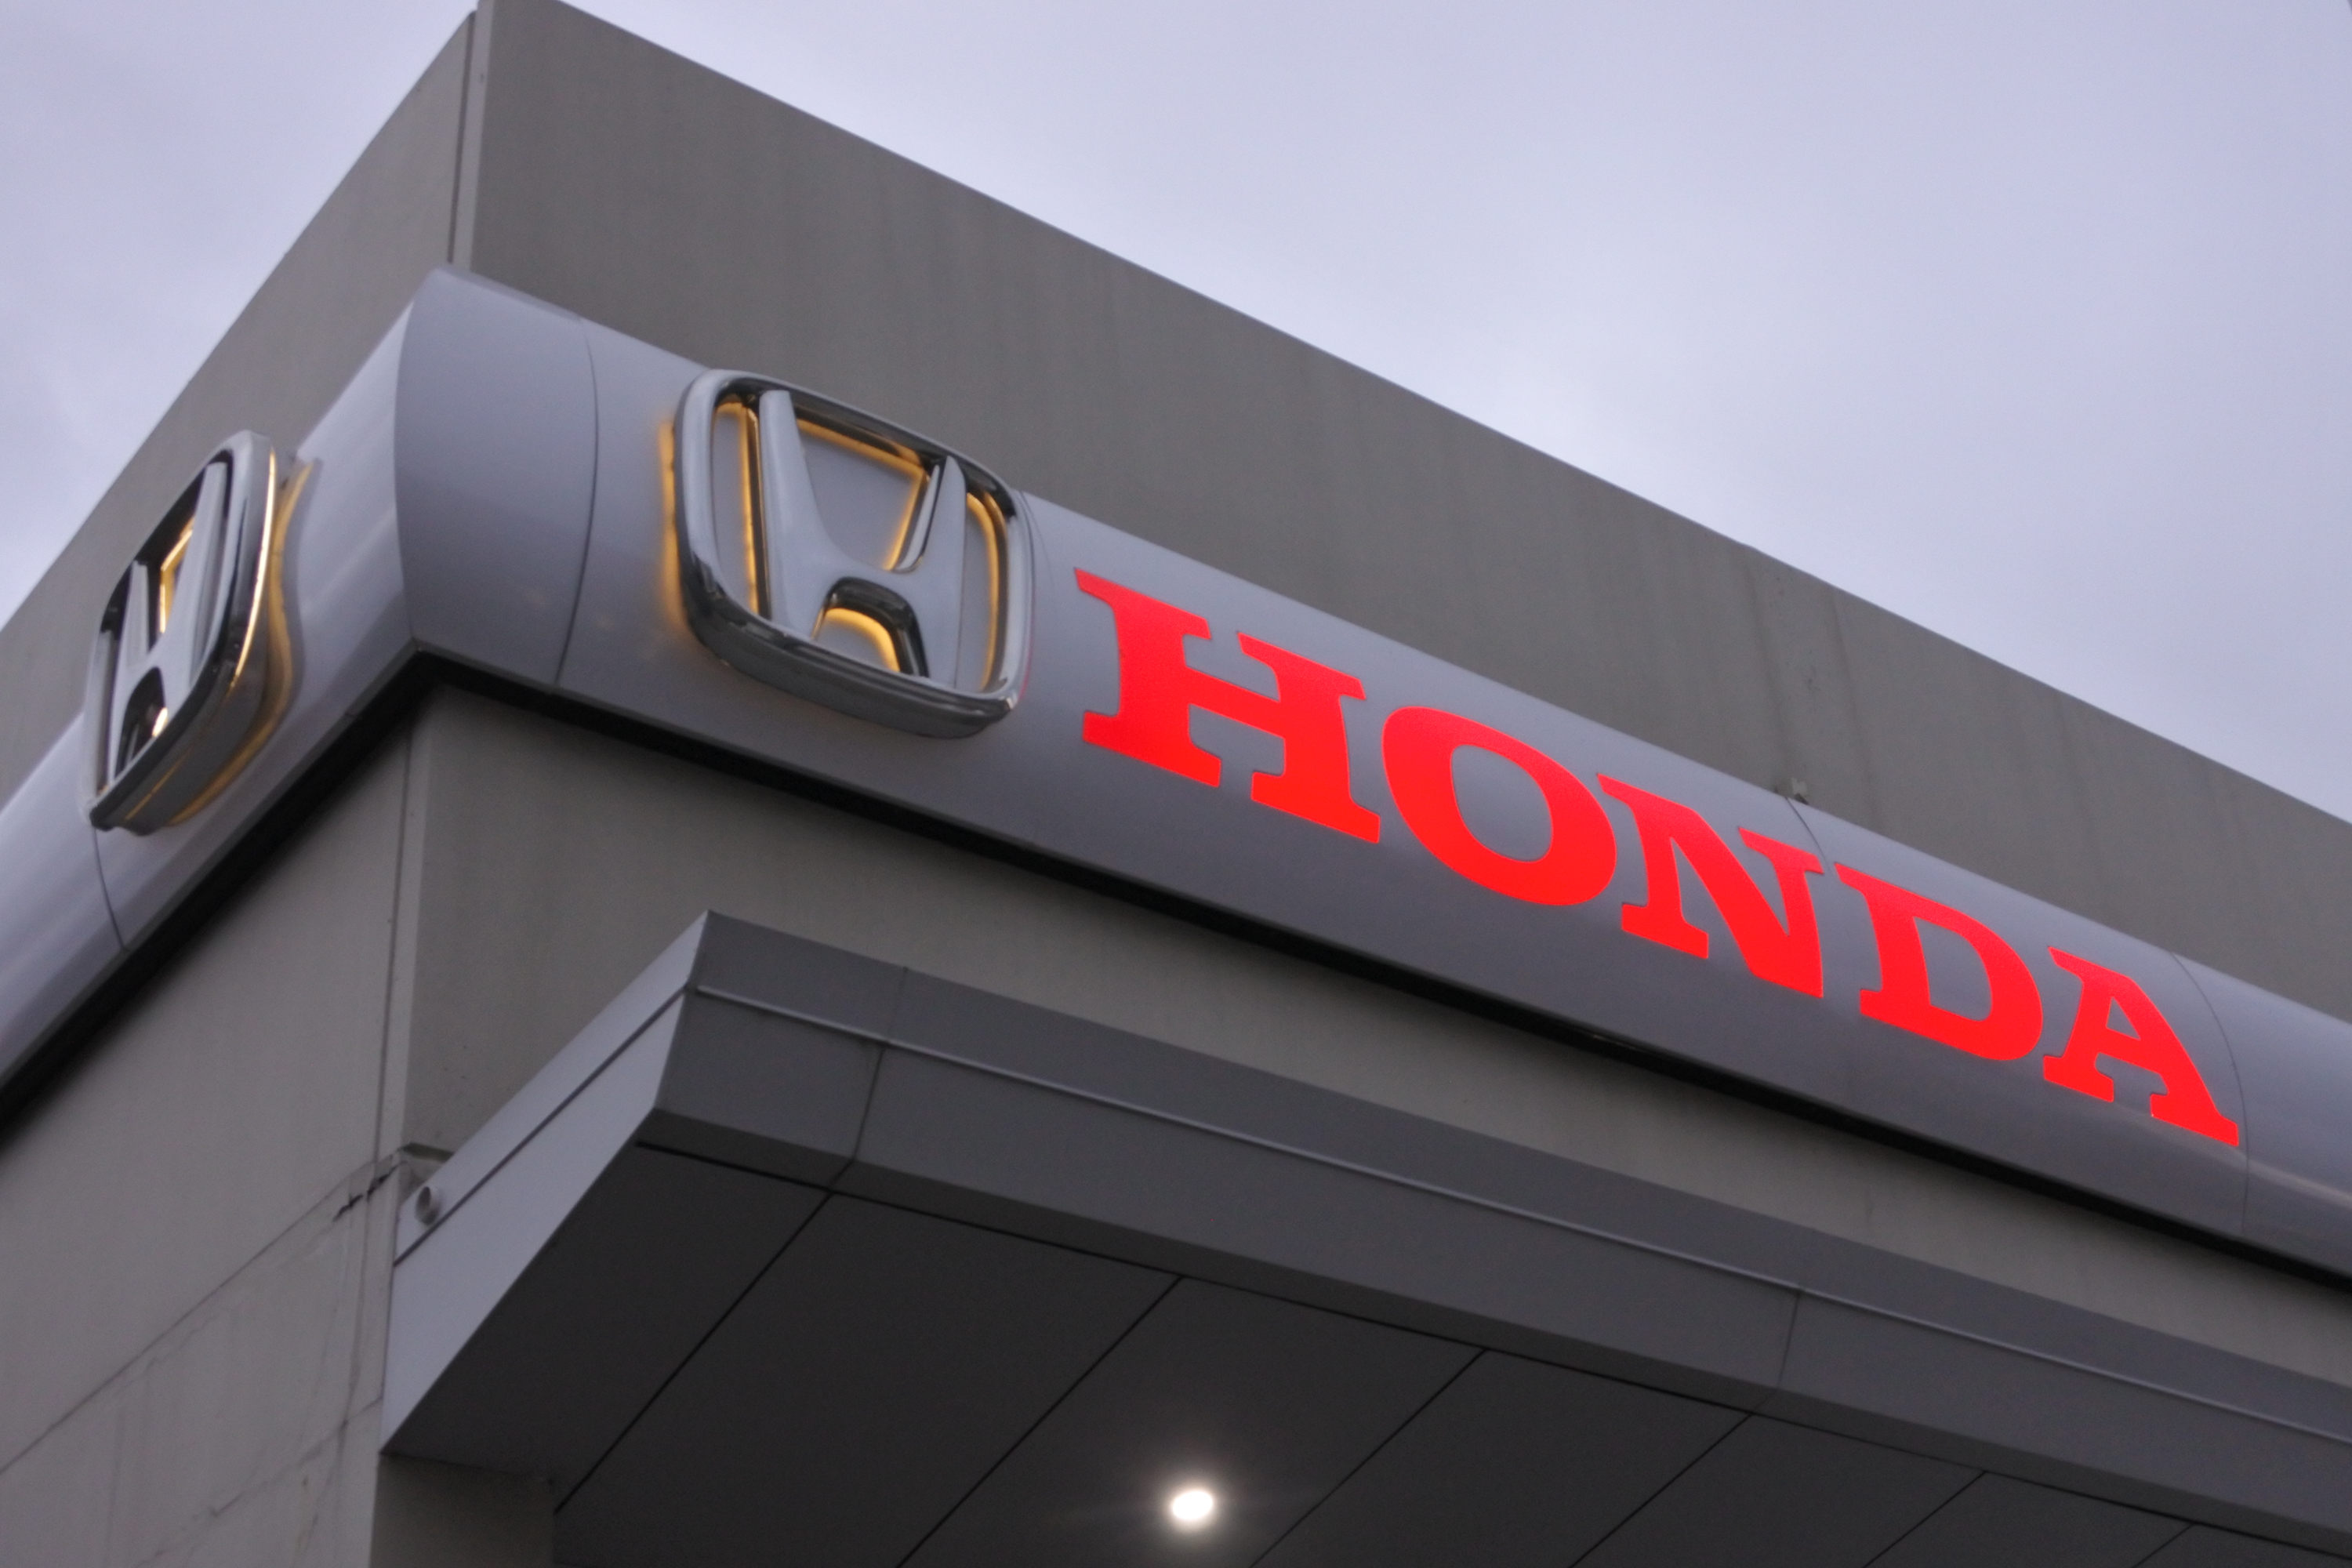 Honda-logo